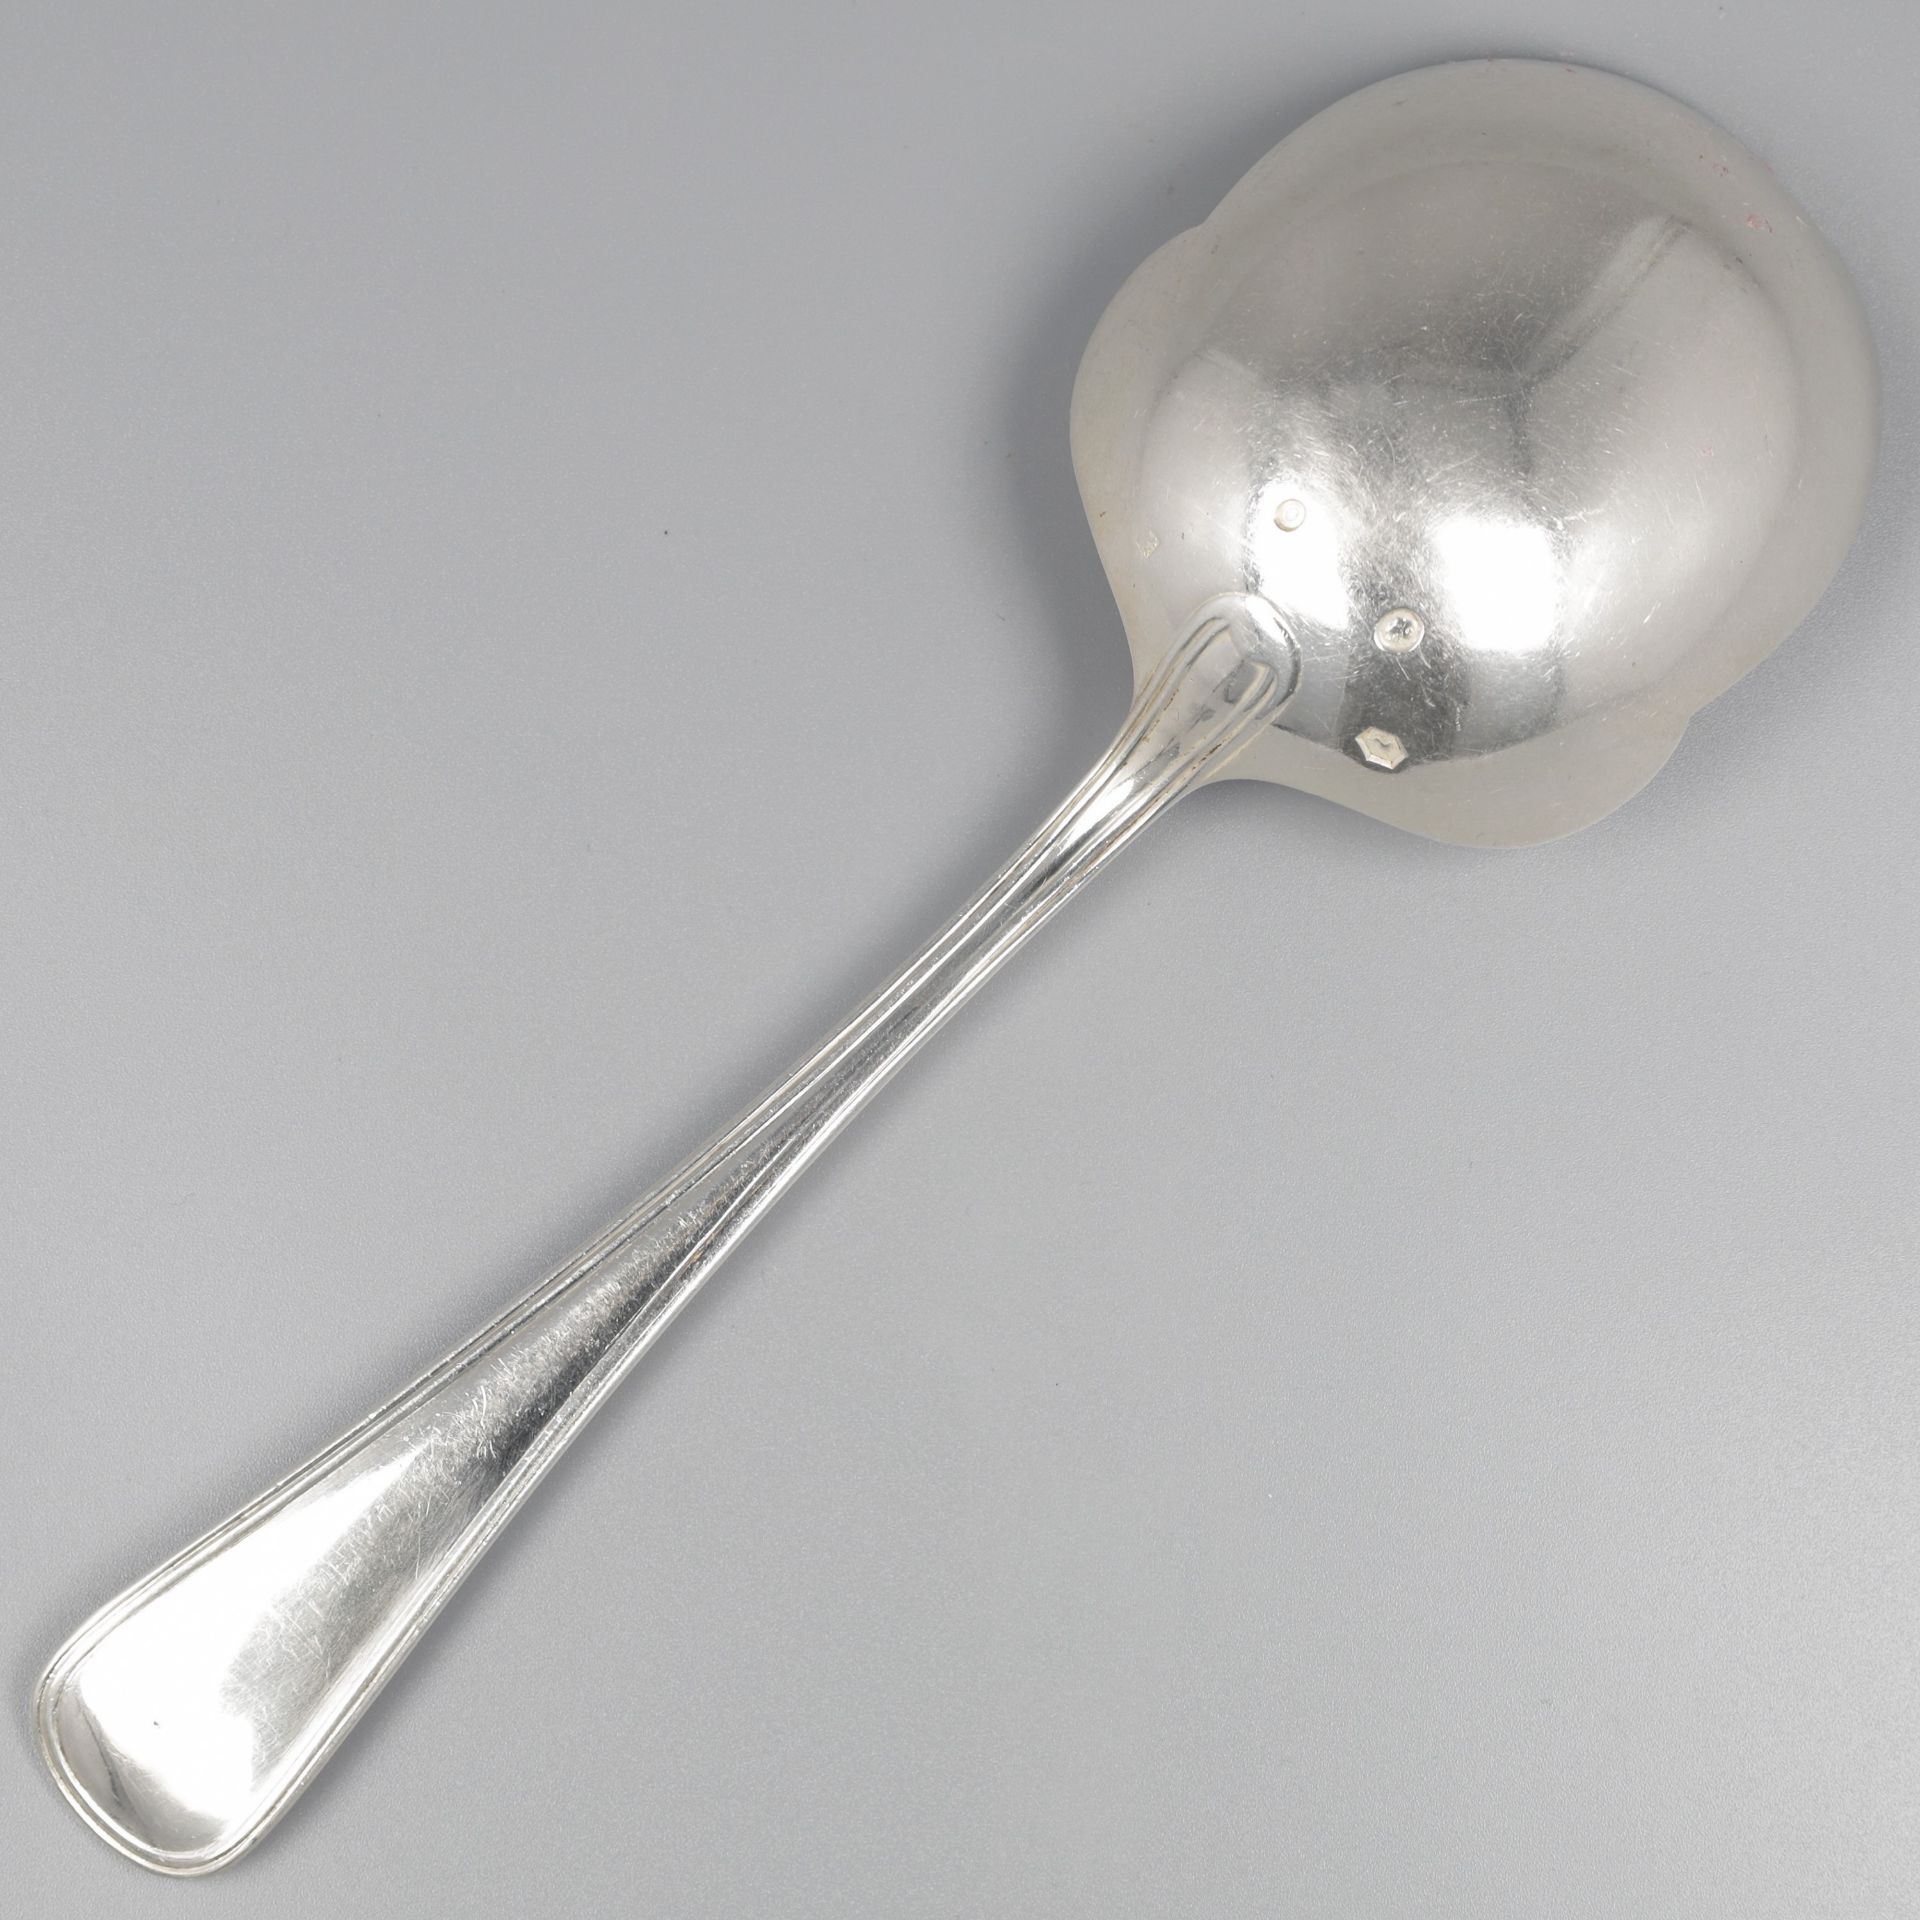 No reserve - Potato serving spoon "Hollands Rondfilet" silver. - Bild 2 aus 7